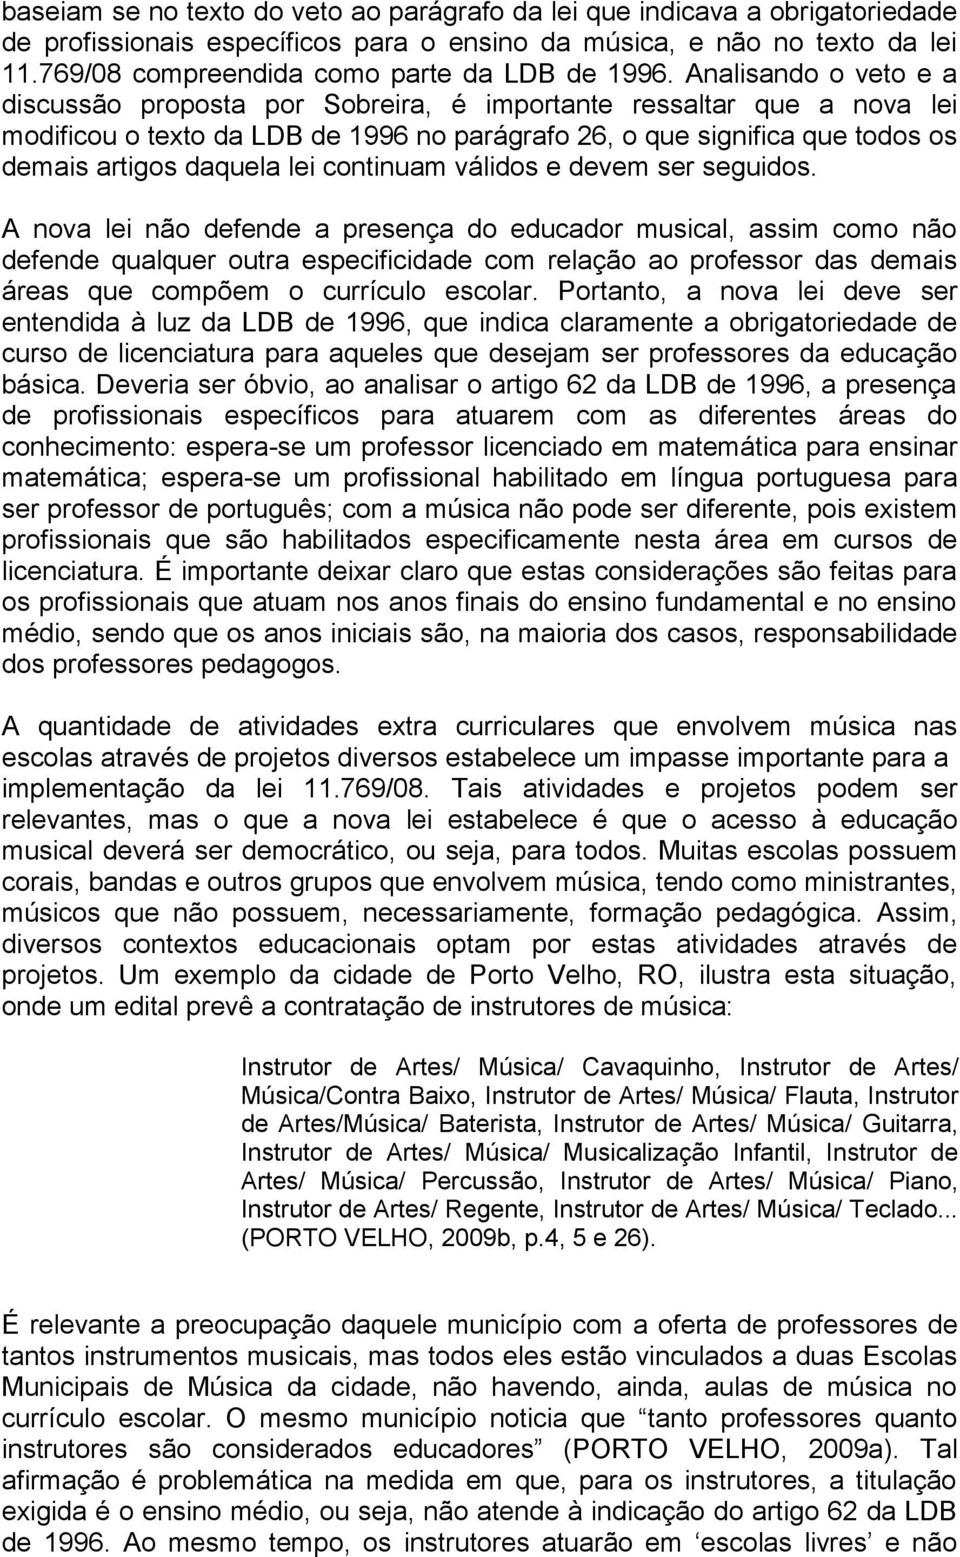 Analisando o veto e a discussão proposta por Sobreira, é importante ressaltar que a nova lei modificou o texto da LDB de 1996 no parágrafo 26, o que significa que todos os demais artigos daquela lei